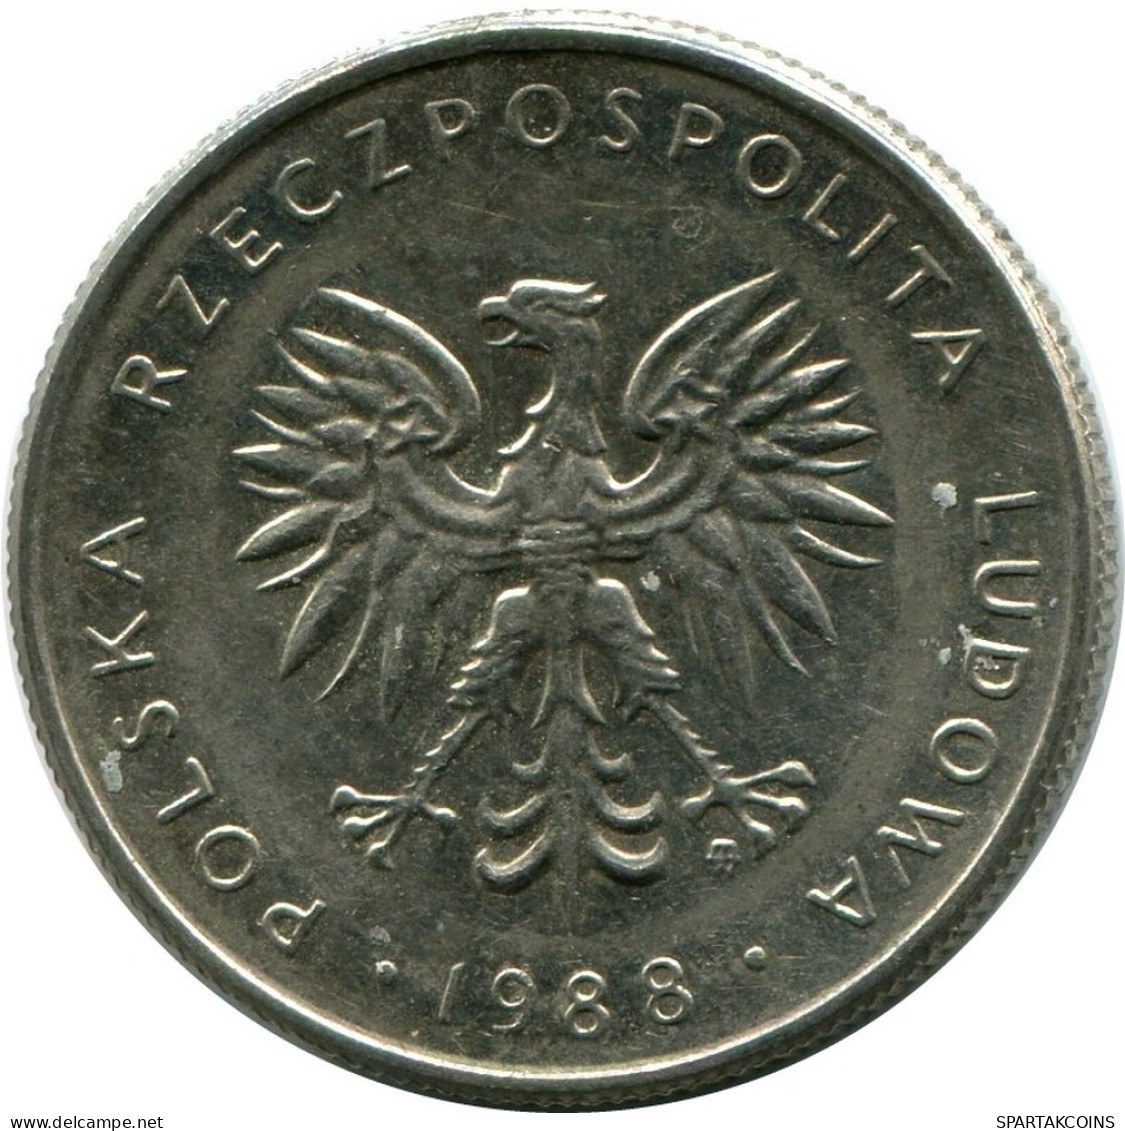 10 ZLOTYCH 1988 POLAND Coin #M10236.U.A - Pologne